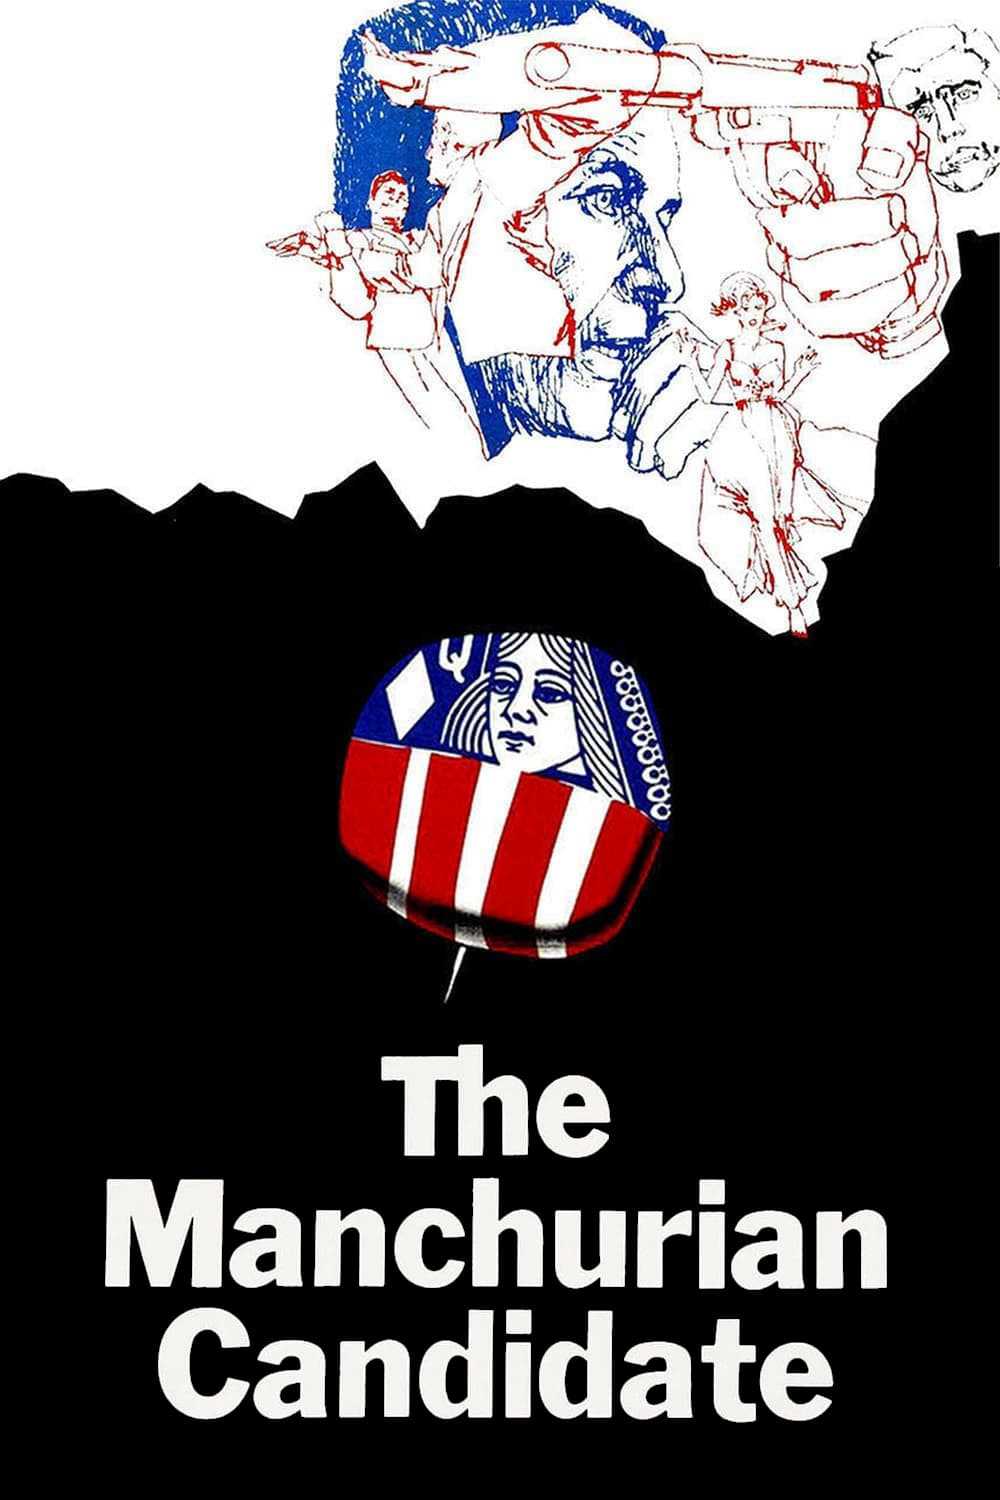 Ứng cử viên bị giật dây - The manchurian candidate